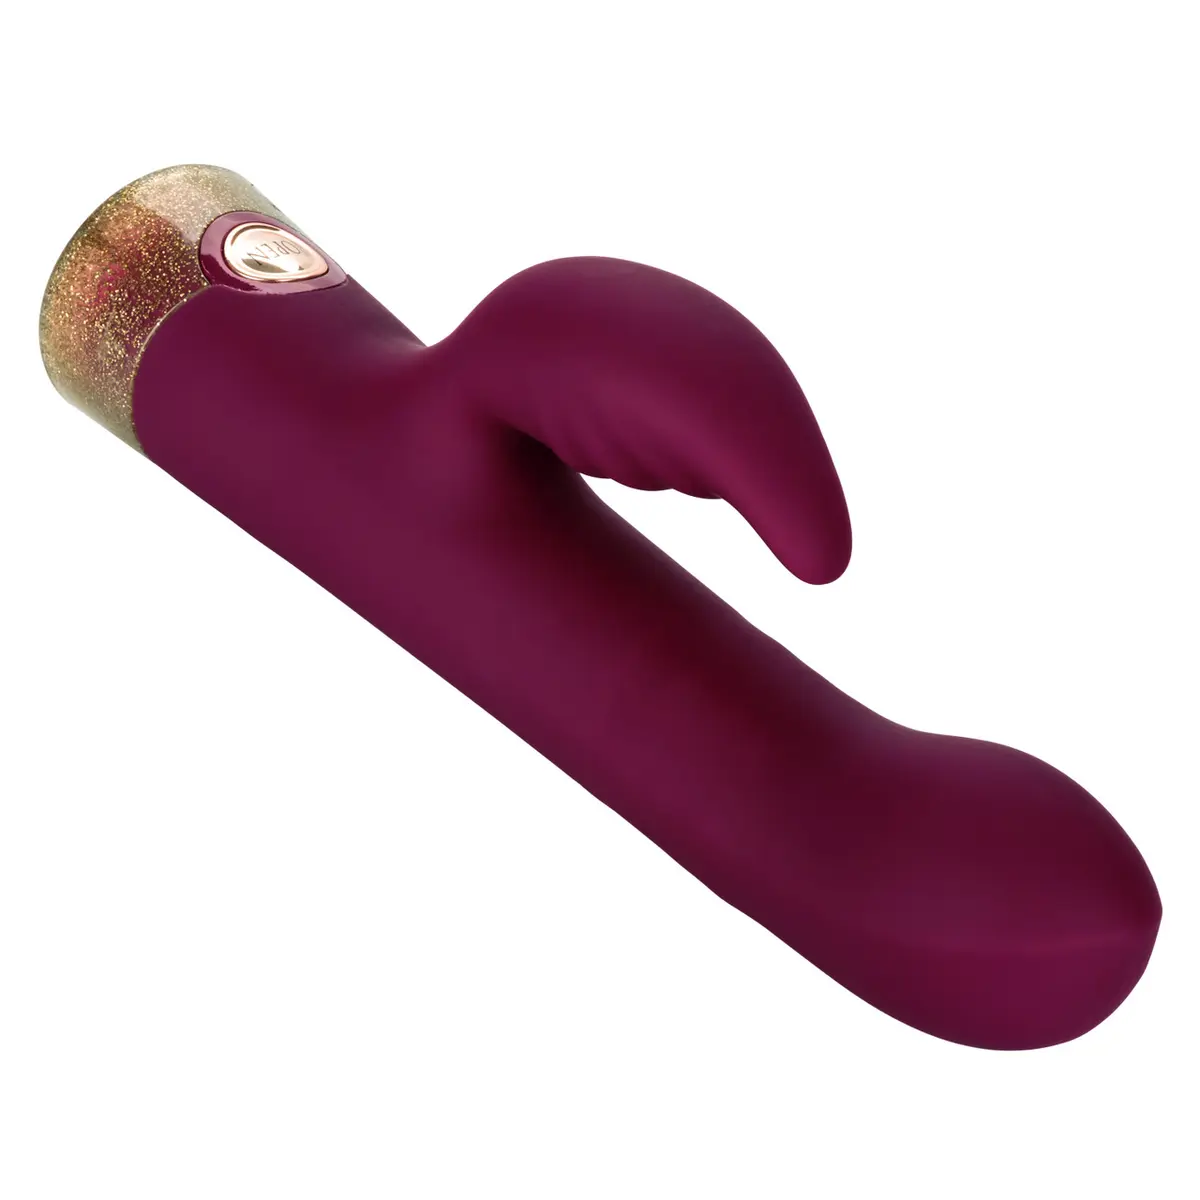 14. CalExotics Jopen Starstruck Affair Luxury Rabbit Vibrator, Purple